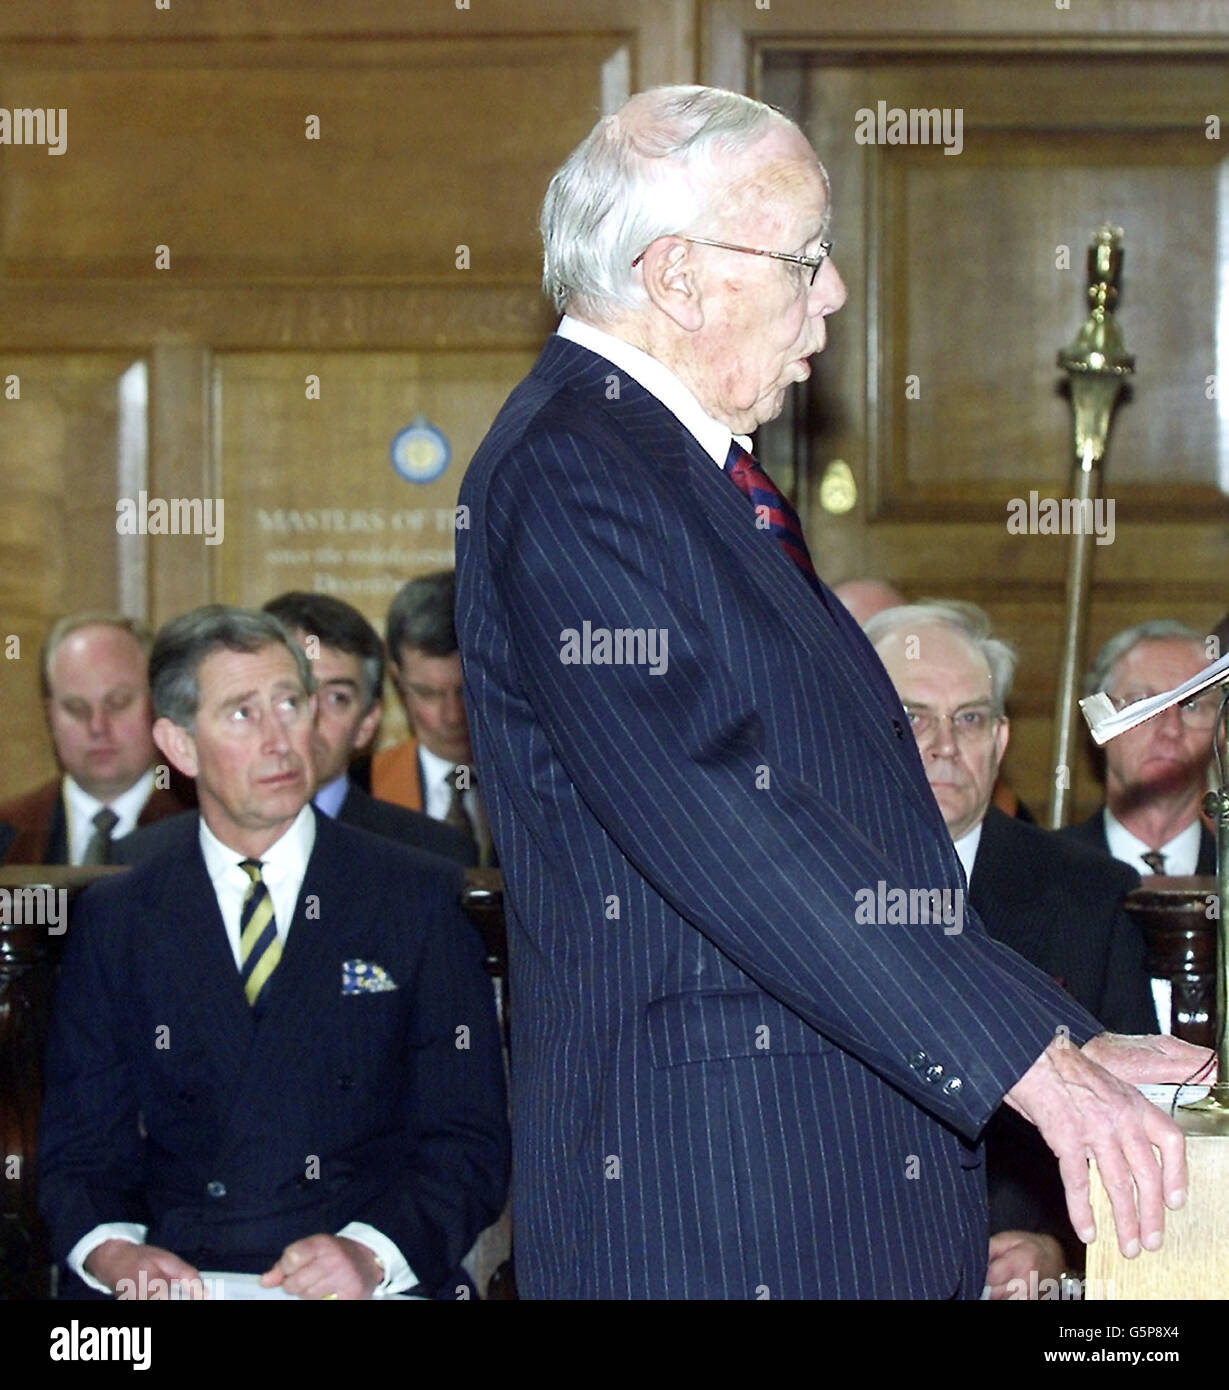 Il Principe di Galles (sfondo sinistro), ascolta Lord Deedes, ex editore del Daily Telegraph durante il suo discorso presso un servizio nella chiesa di St Bride in Fleet Street di Londra, per celebrare i 300 anni dell'industria dei giornali in Fleet Street. Foto Stock